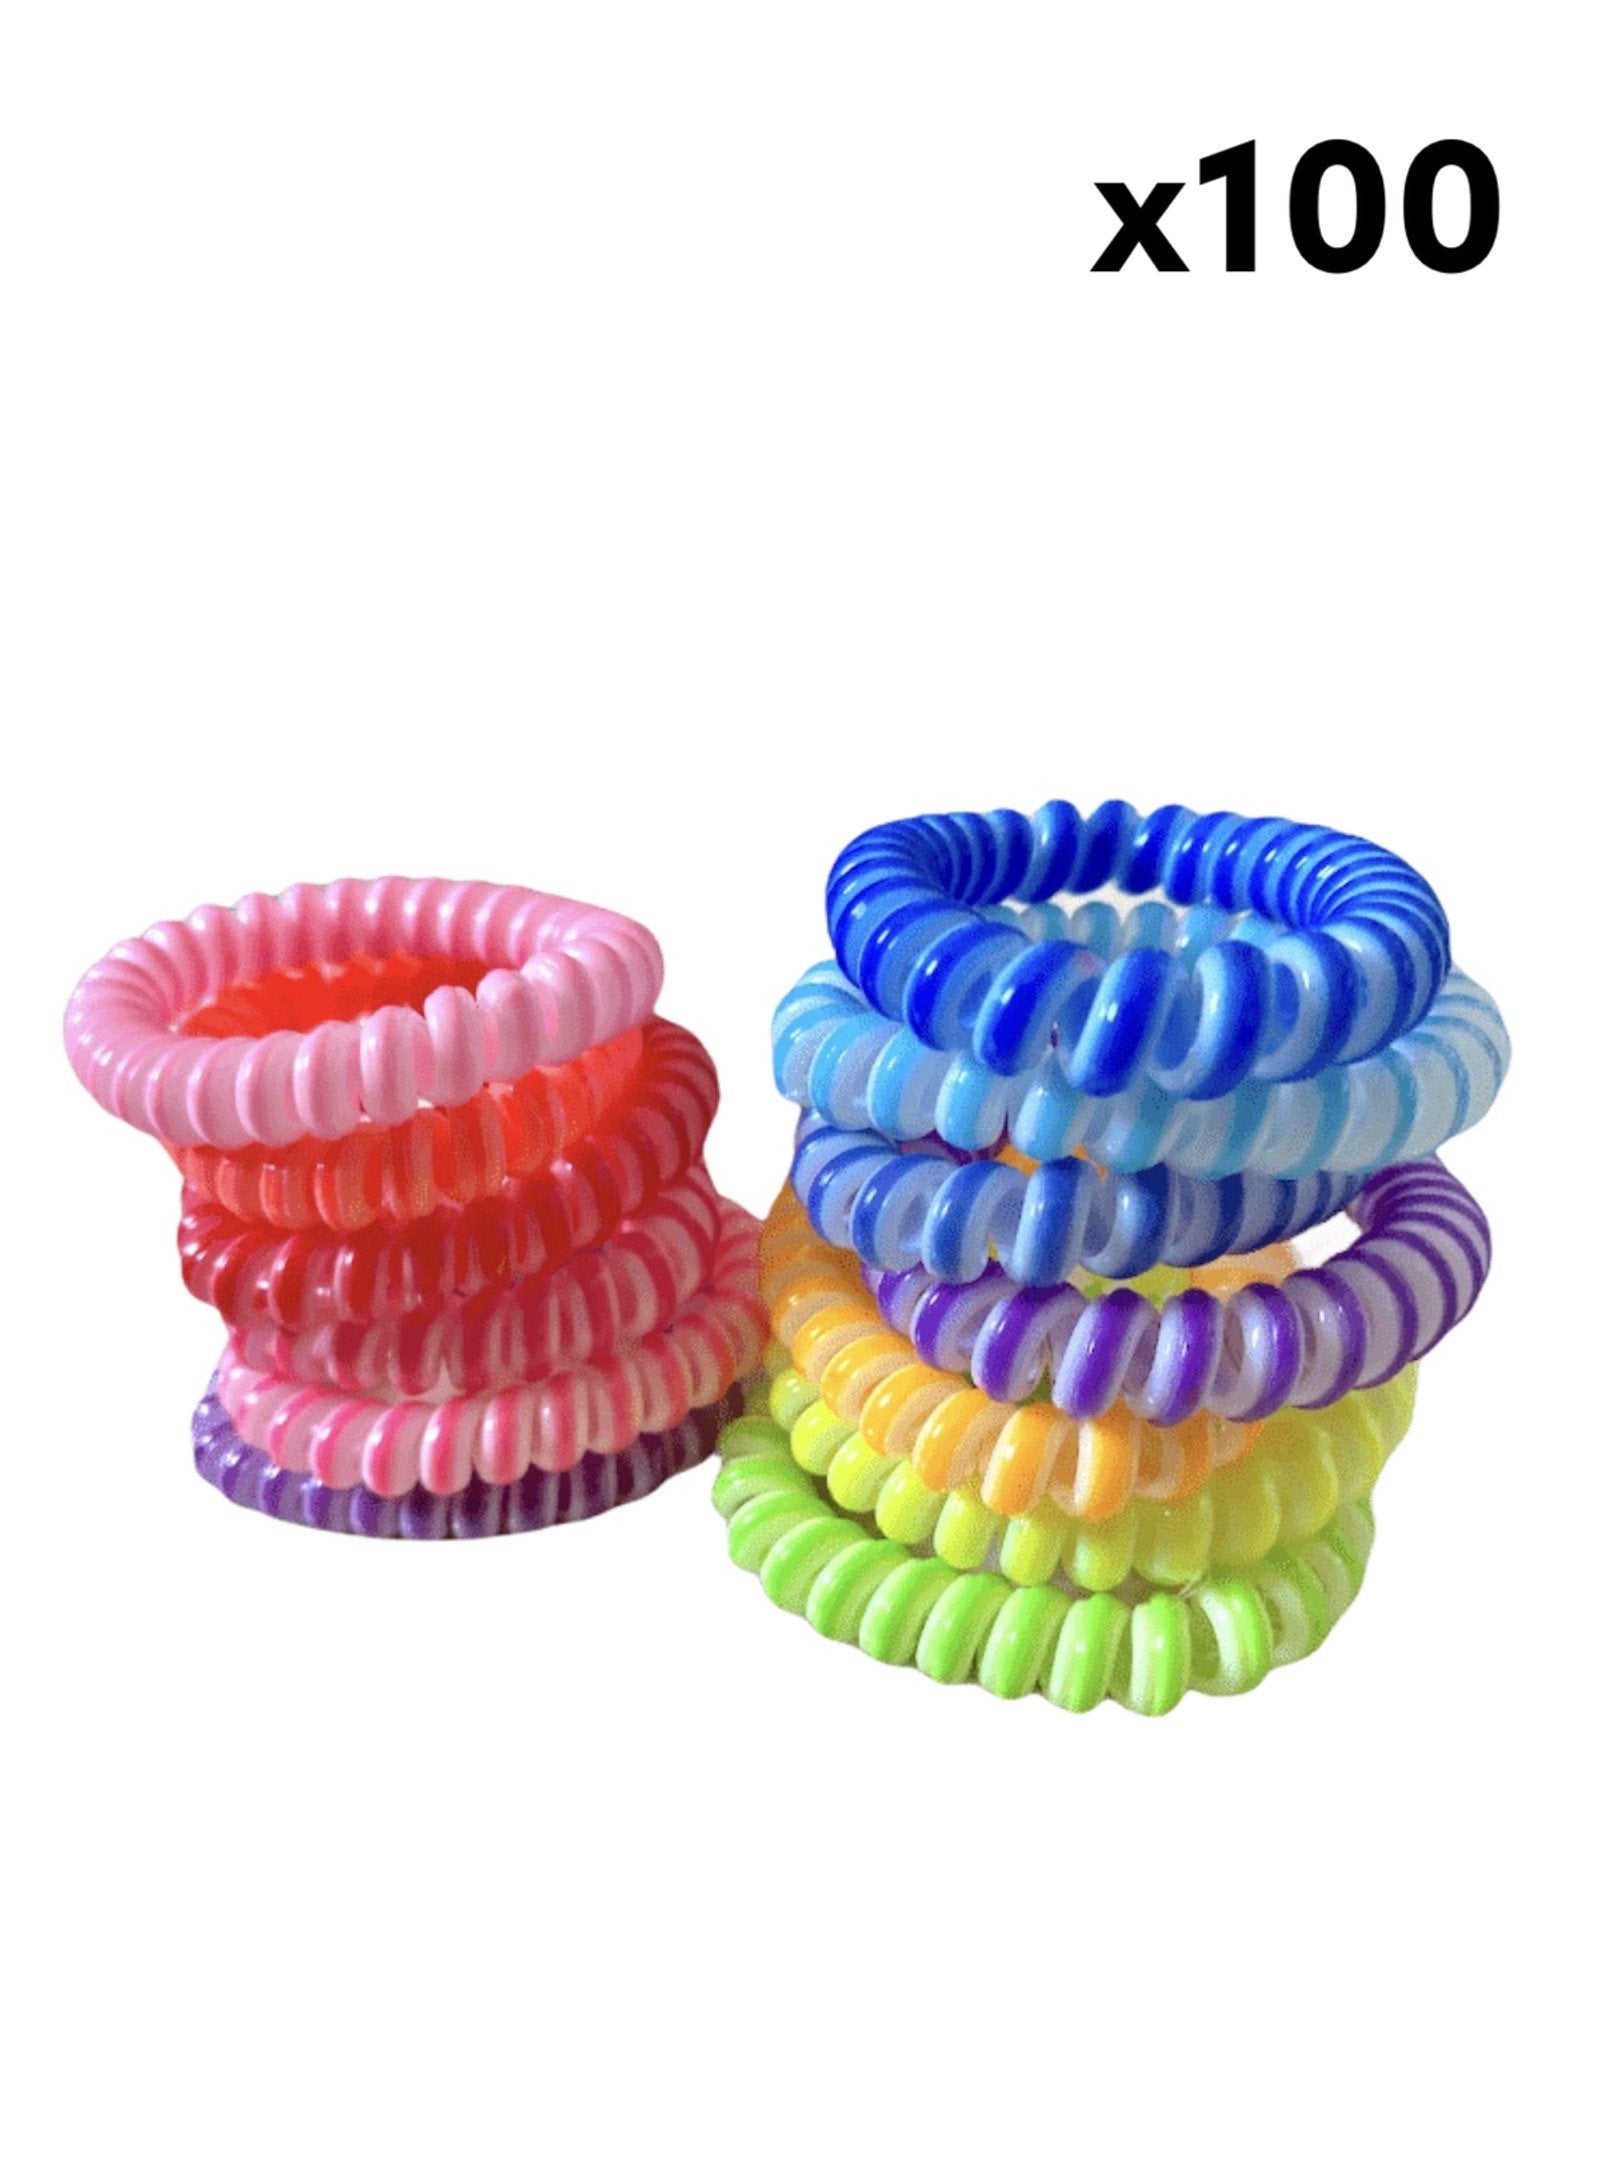 Élastiques cheveux spirales bicolore (x100) 0,09€/unité | Grossiste-pro